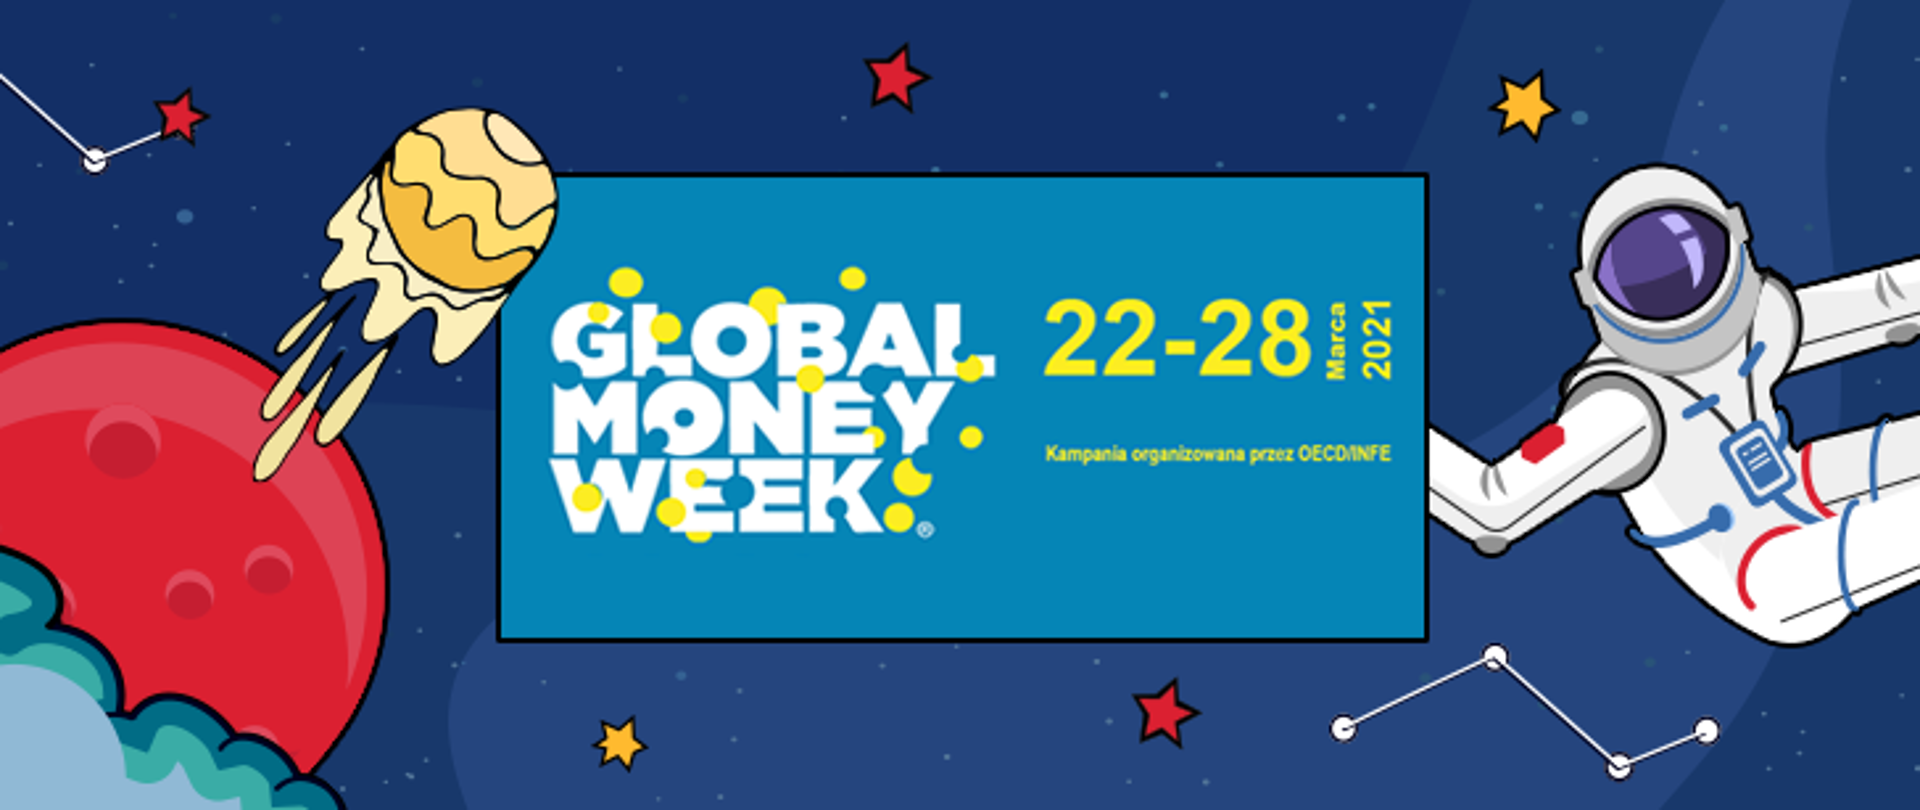 Grafika z kosmonautą i napisem Global Money Week 22-28 marca 2021.